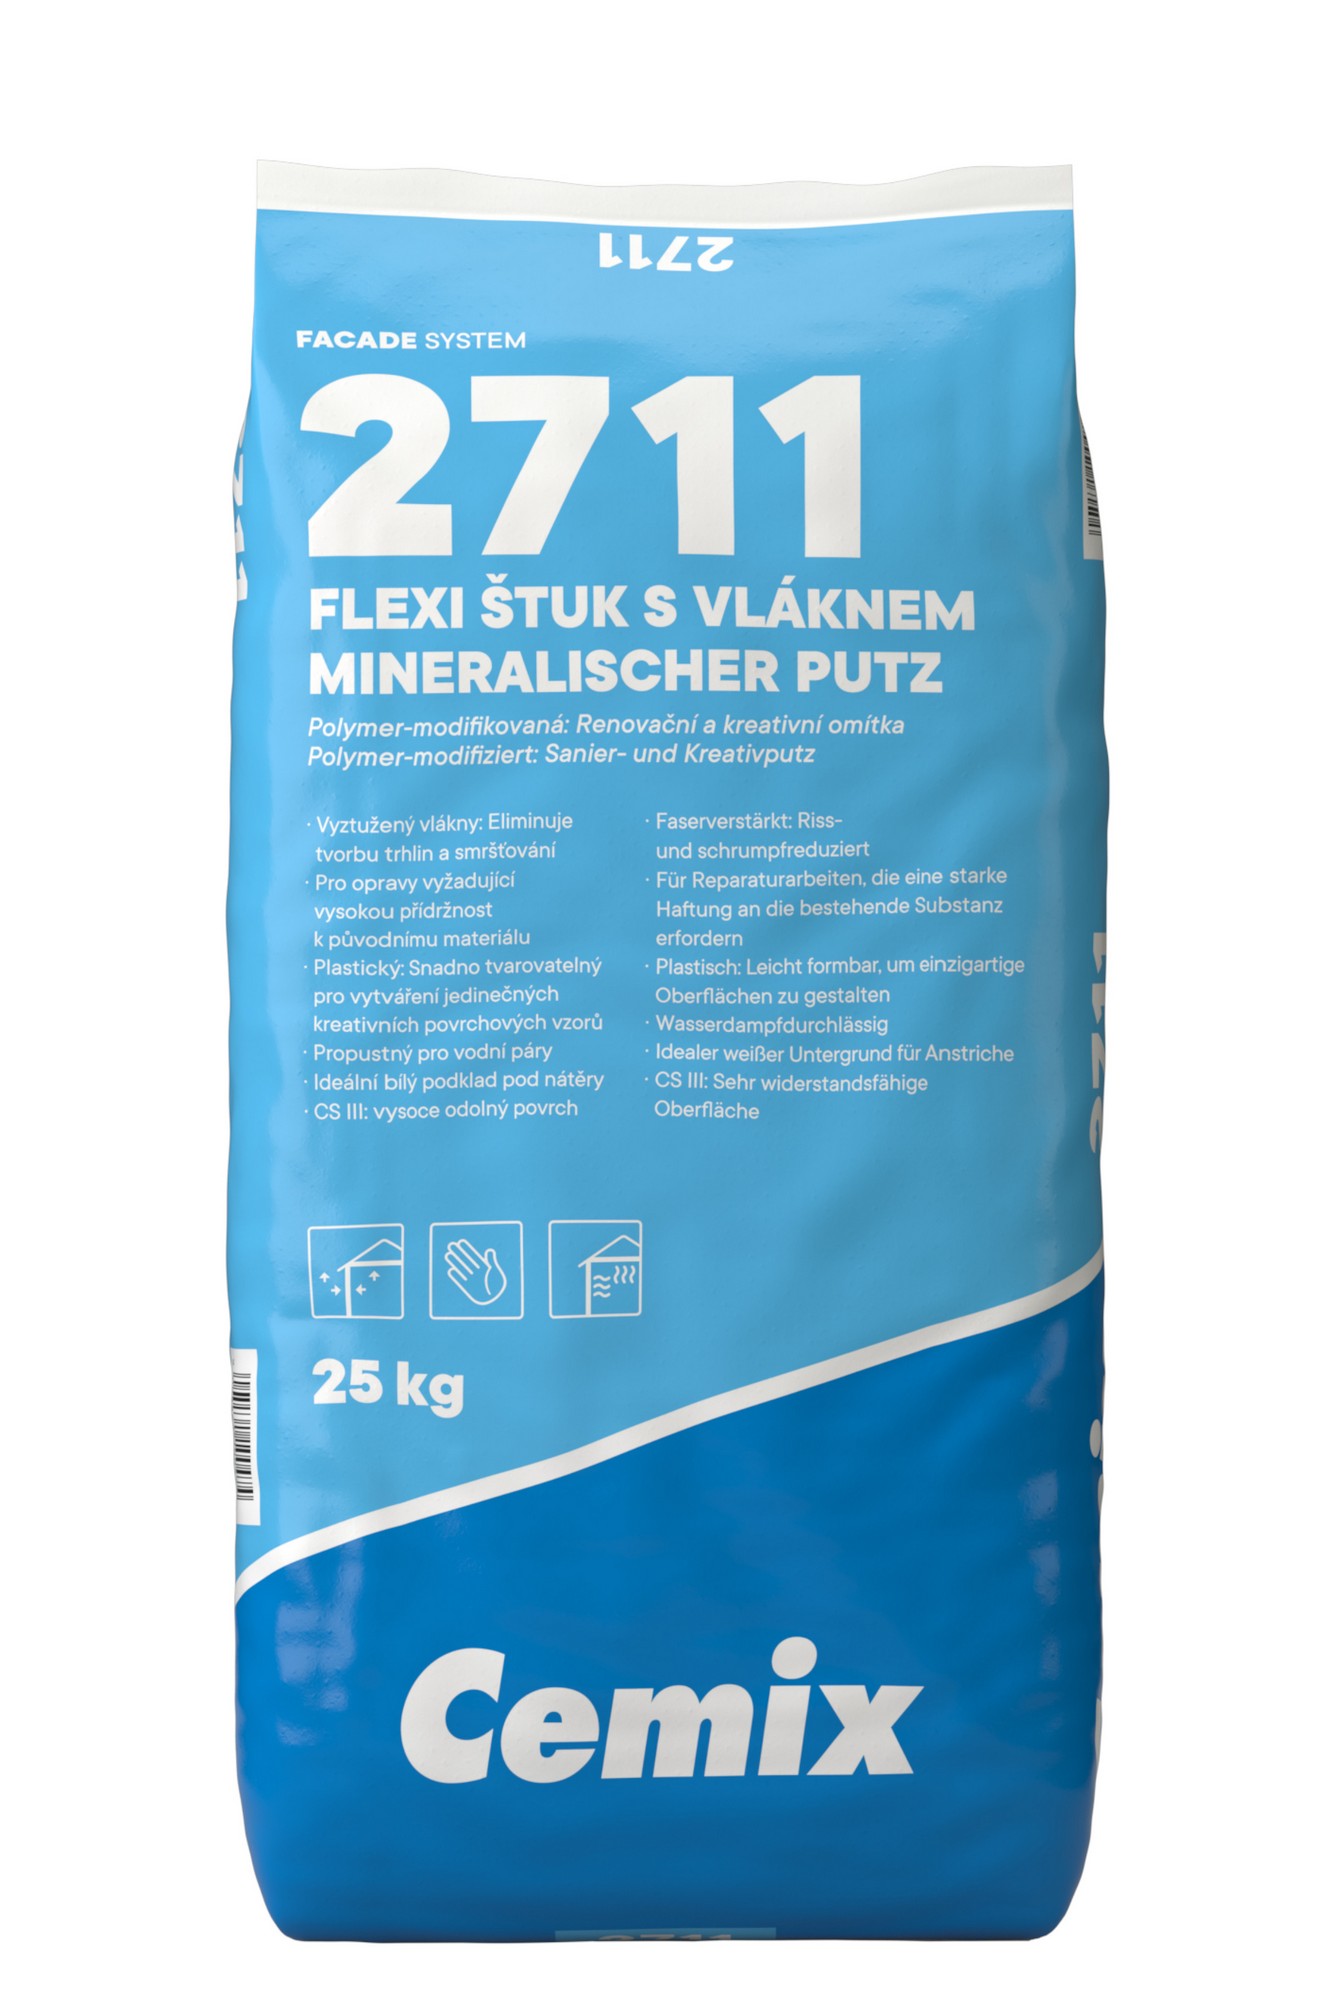 Štuk speciální Cemix 2711 FLEXI s vláknem 25 kg